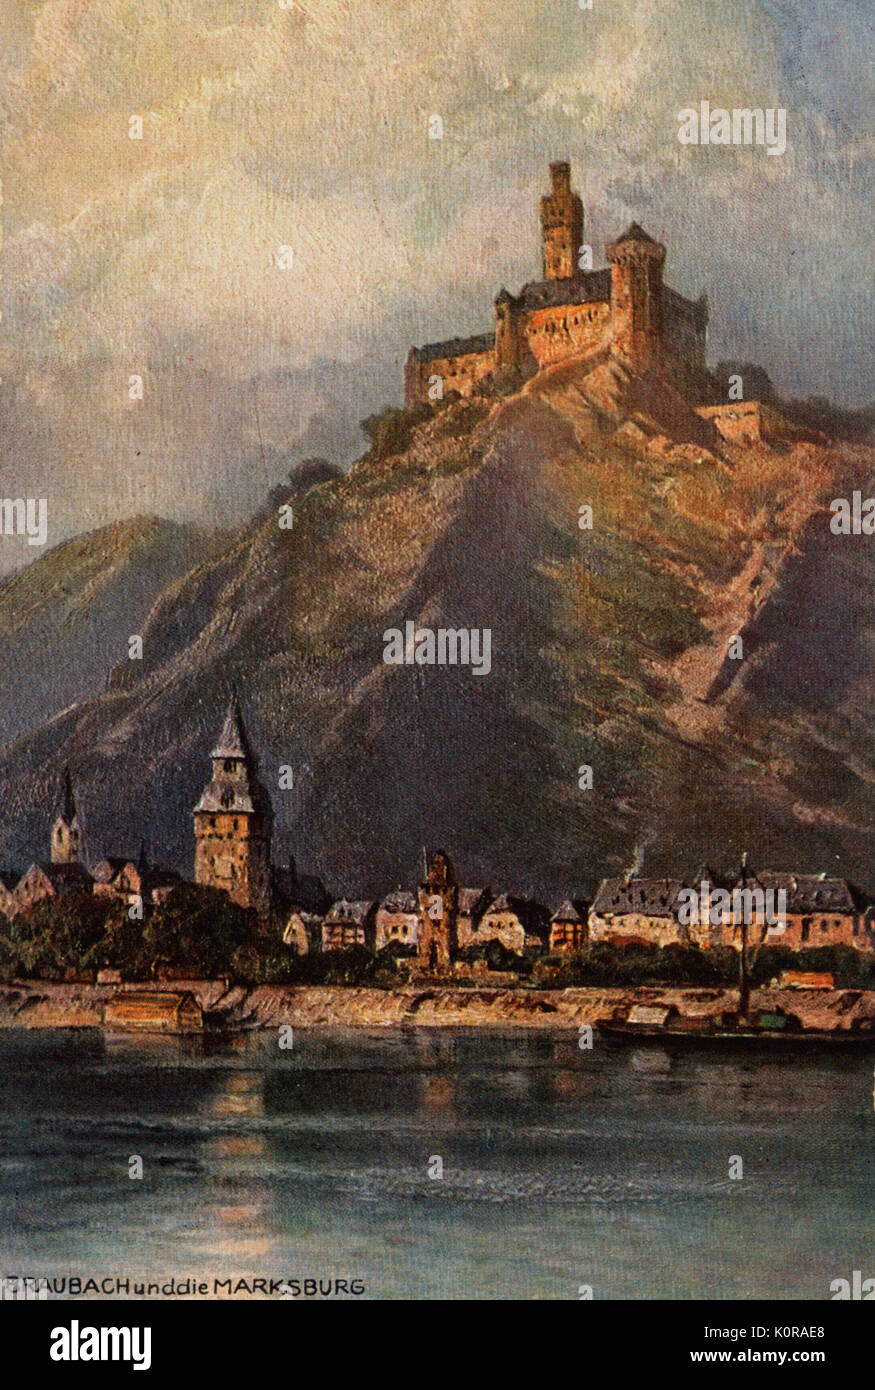 Il Marksburg Castle e Braubach, scena sul fiume Reno, Germania. Illustrazione dopo la verniciatura da Nikolai Lvovich Astudin (1847 - 1925) Foto Stock